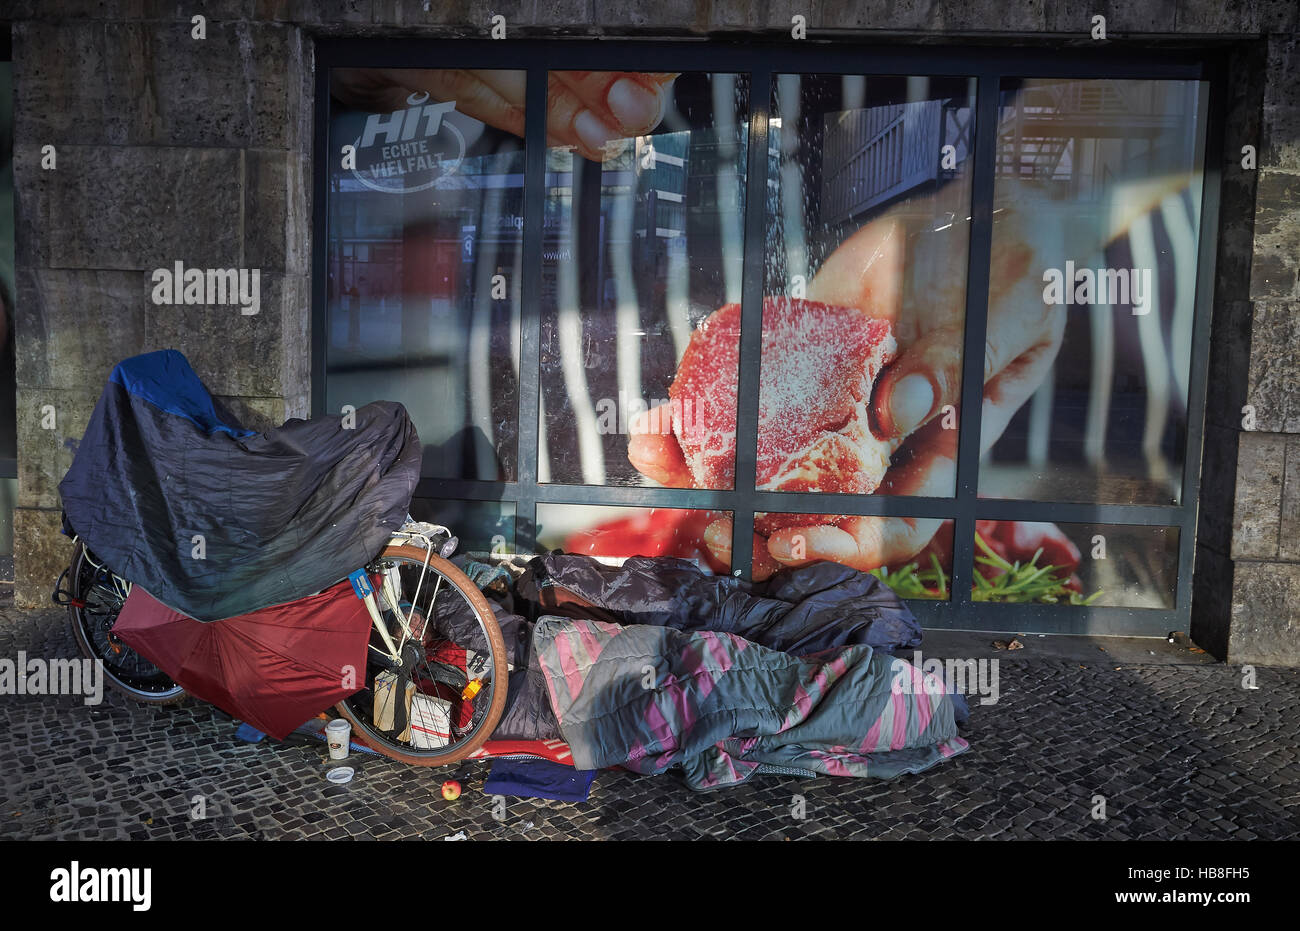 La persona senza dimora che dorme sul percorso nella parte anteriore del negozio di alimentari, Berlino, Germania Foto Stock